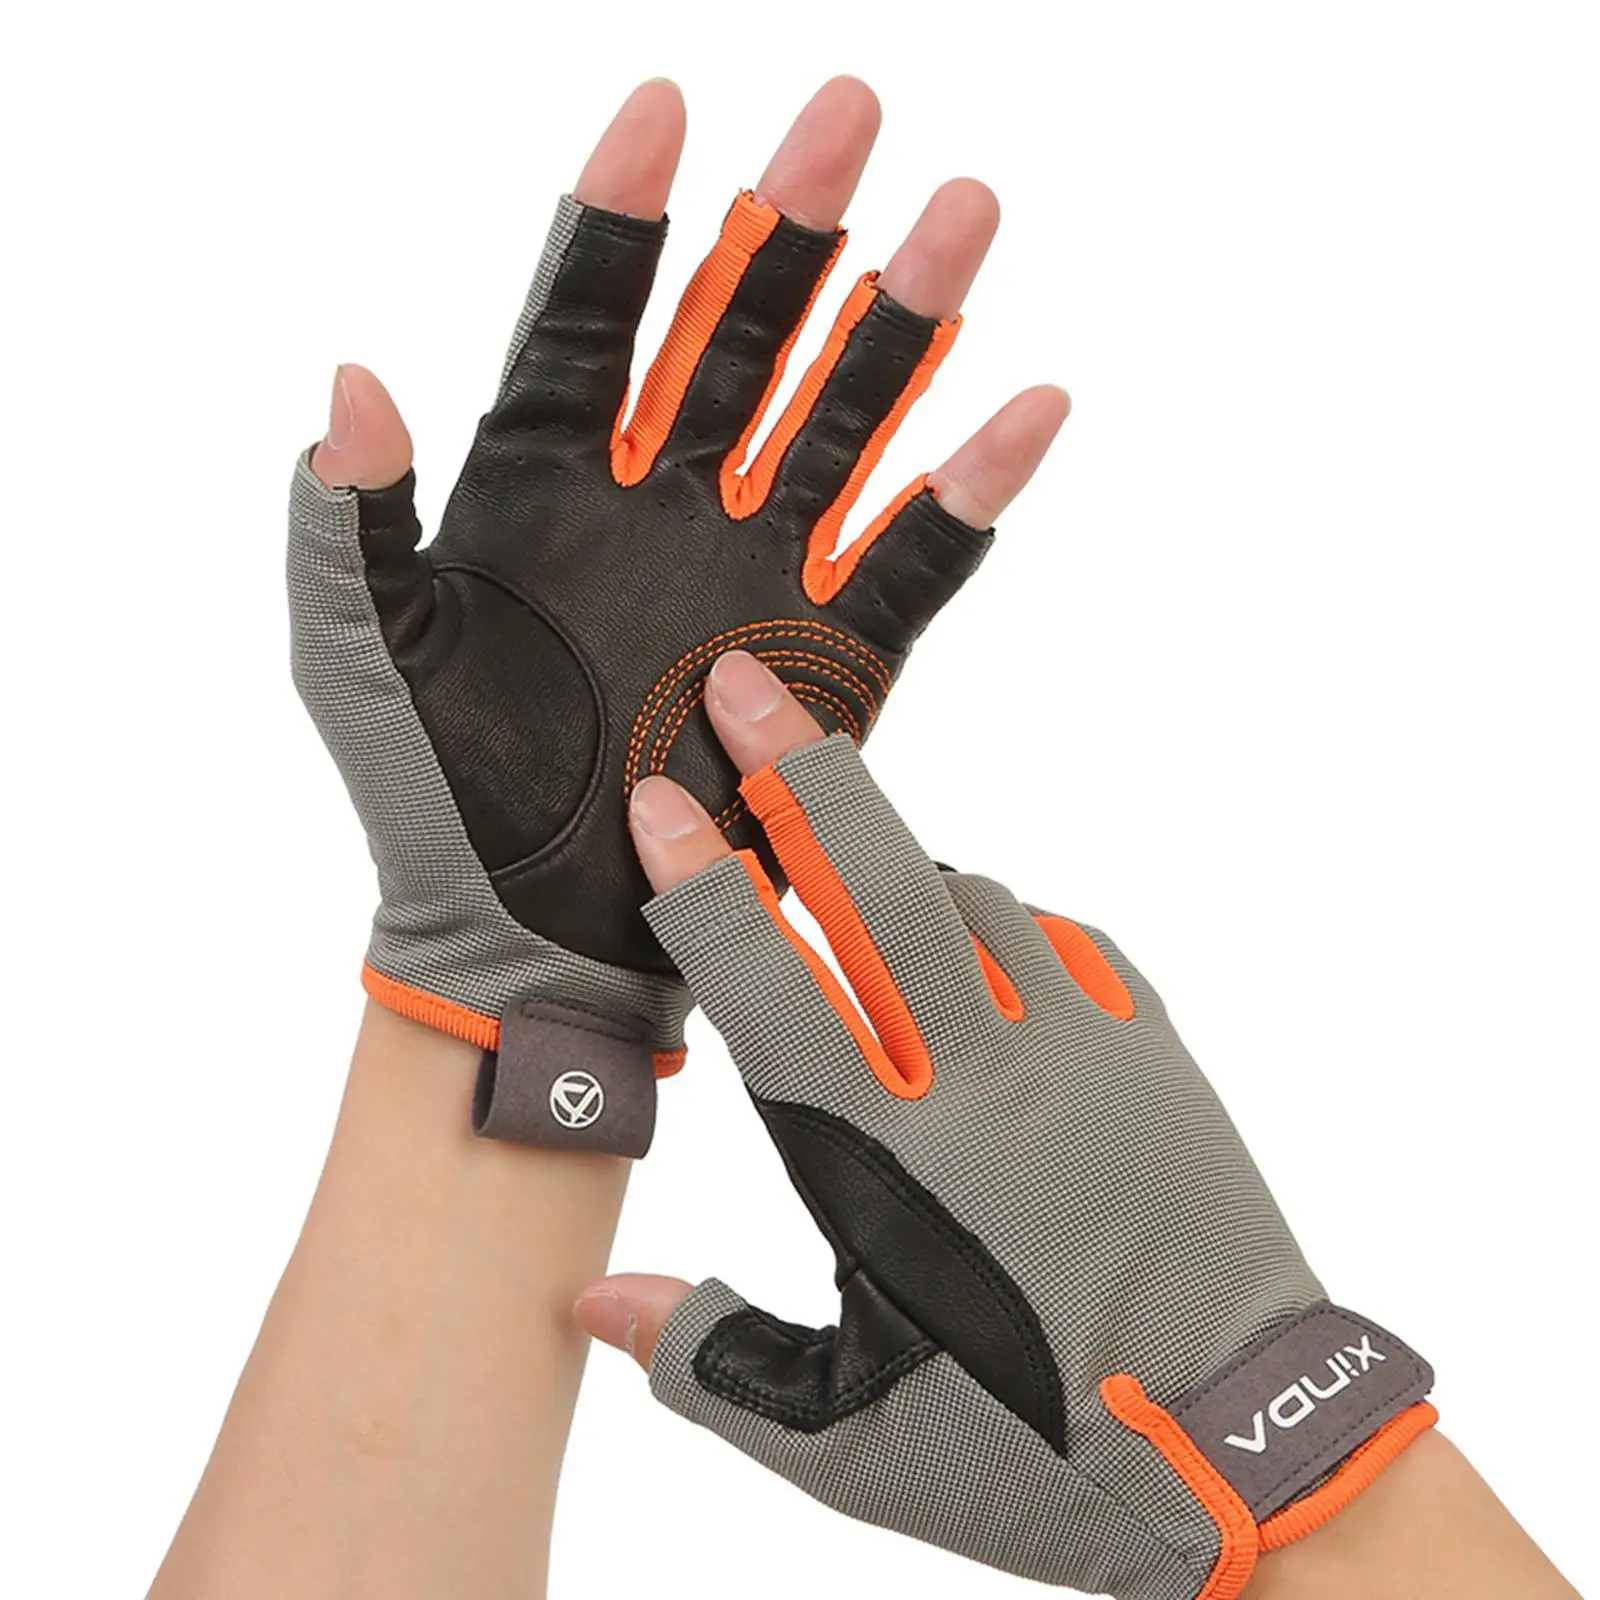 Half Finger Gloves Non Slip Breathable Wear Resistant Gloves for Work Driving Hiking Fitness Men